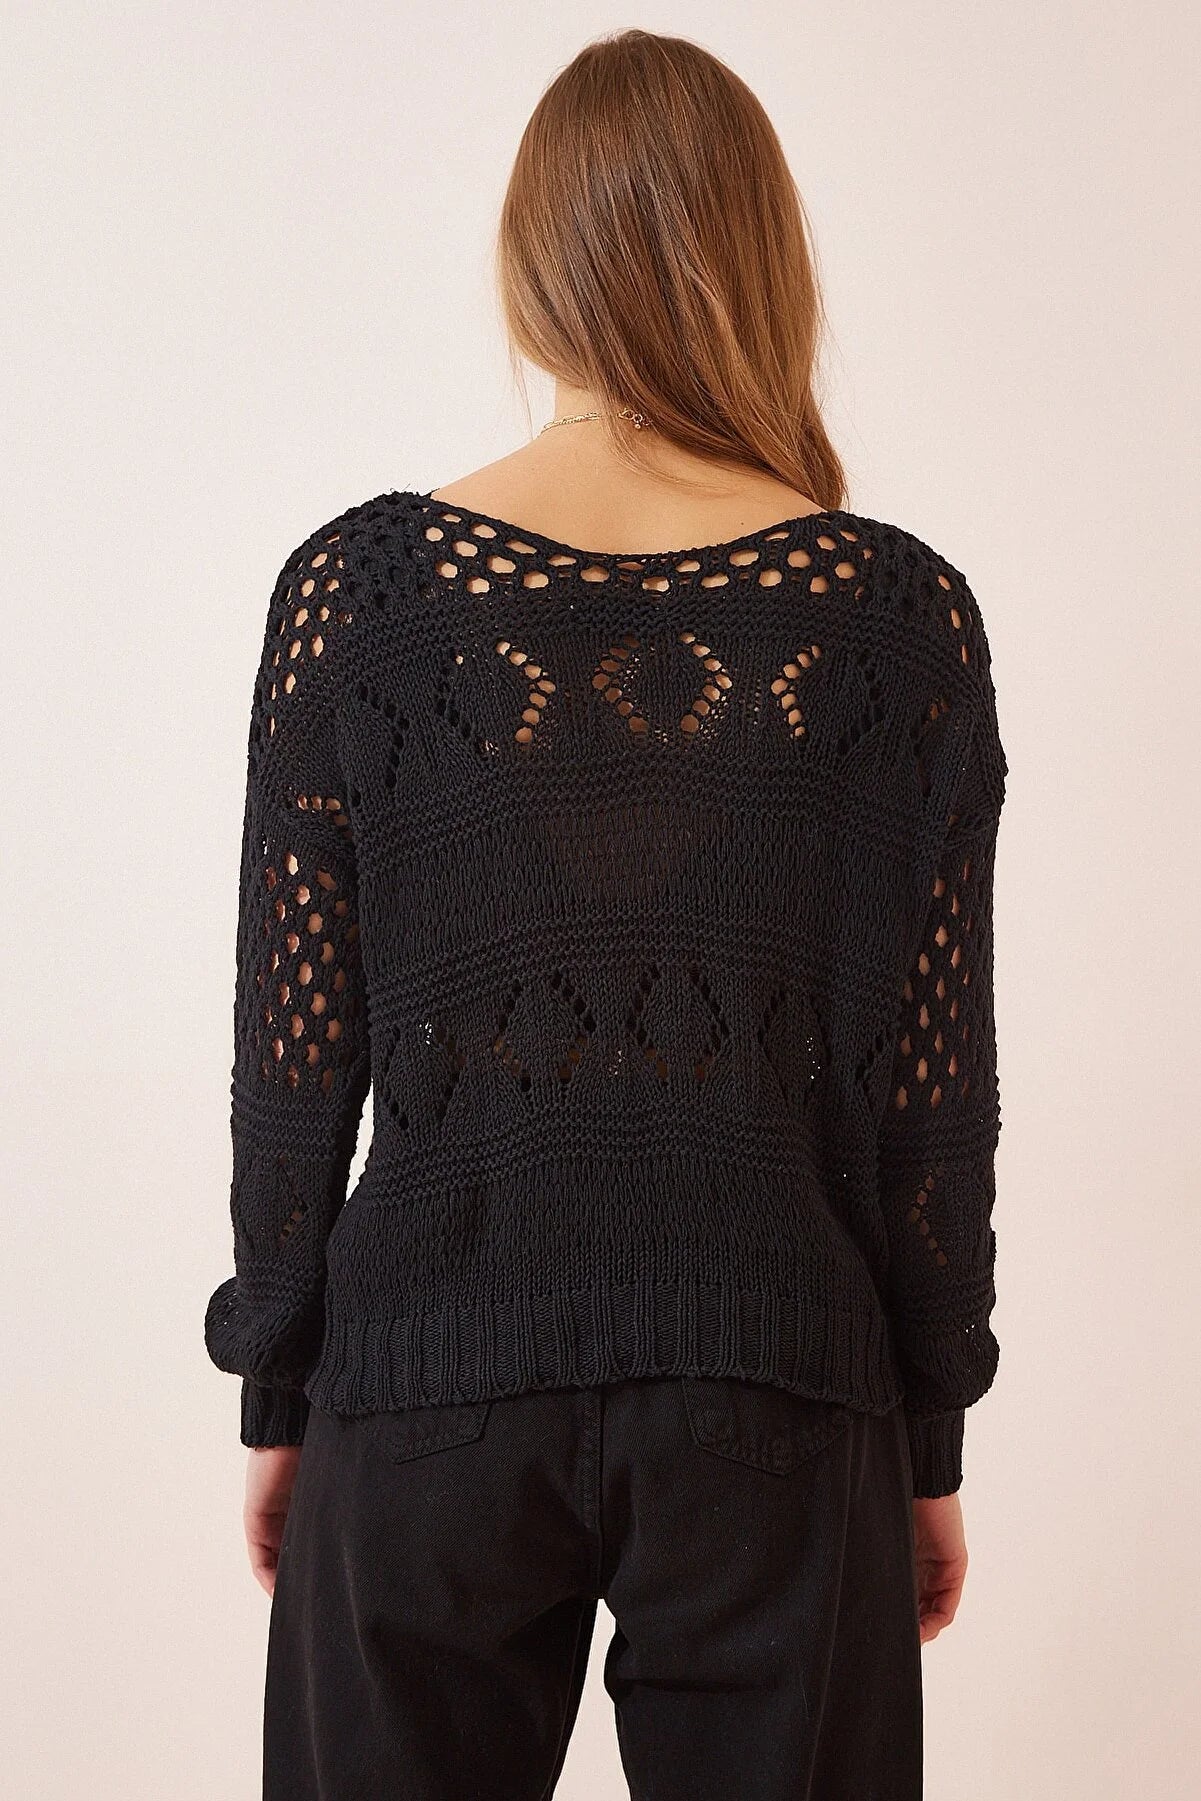 Crochet Black Pullover